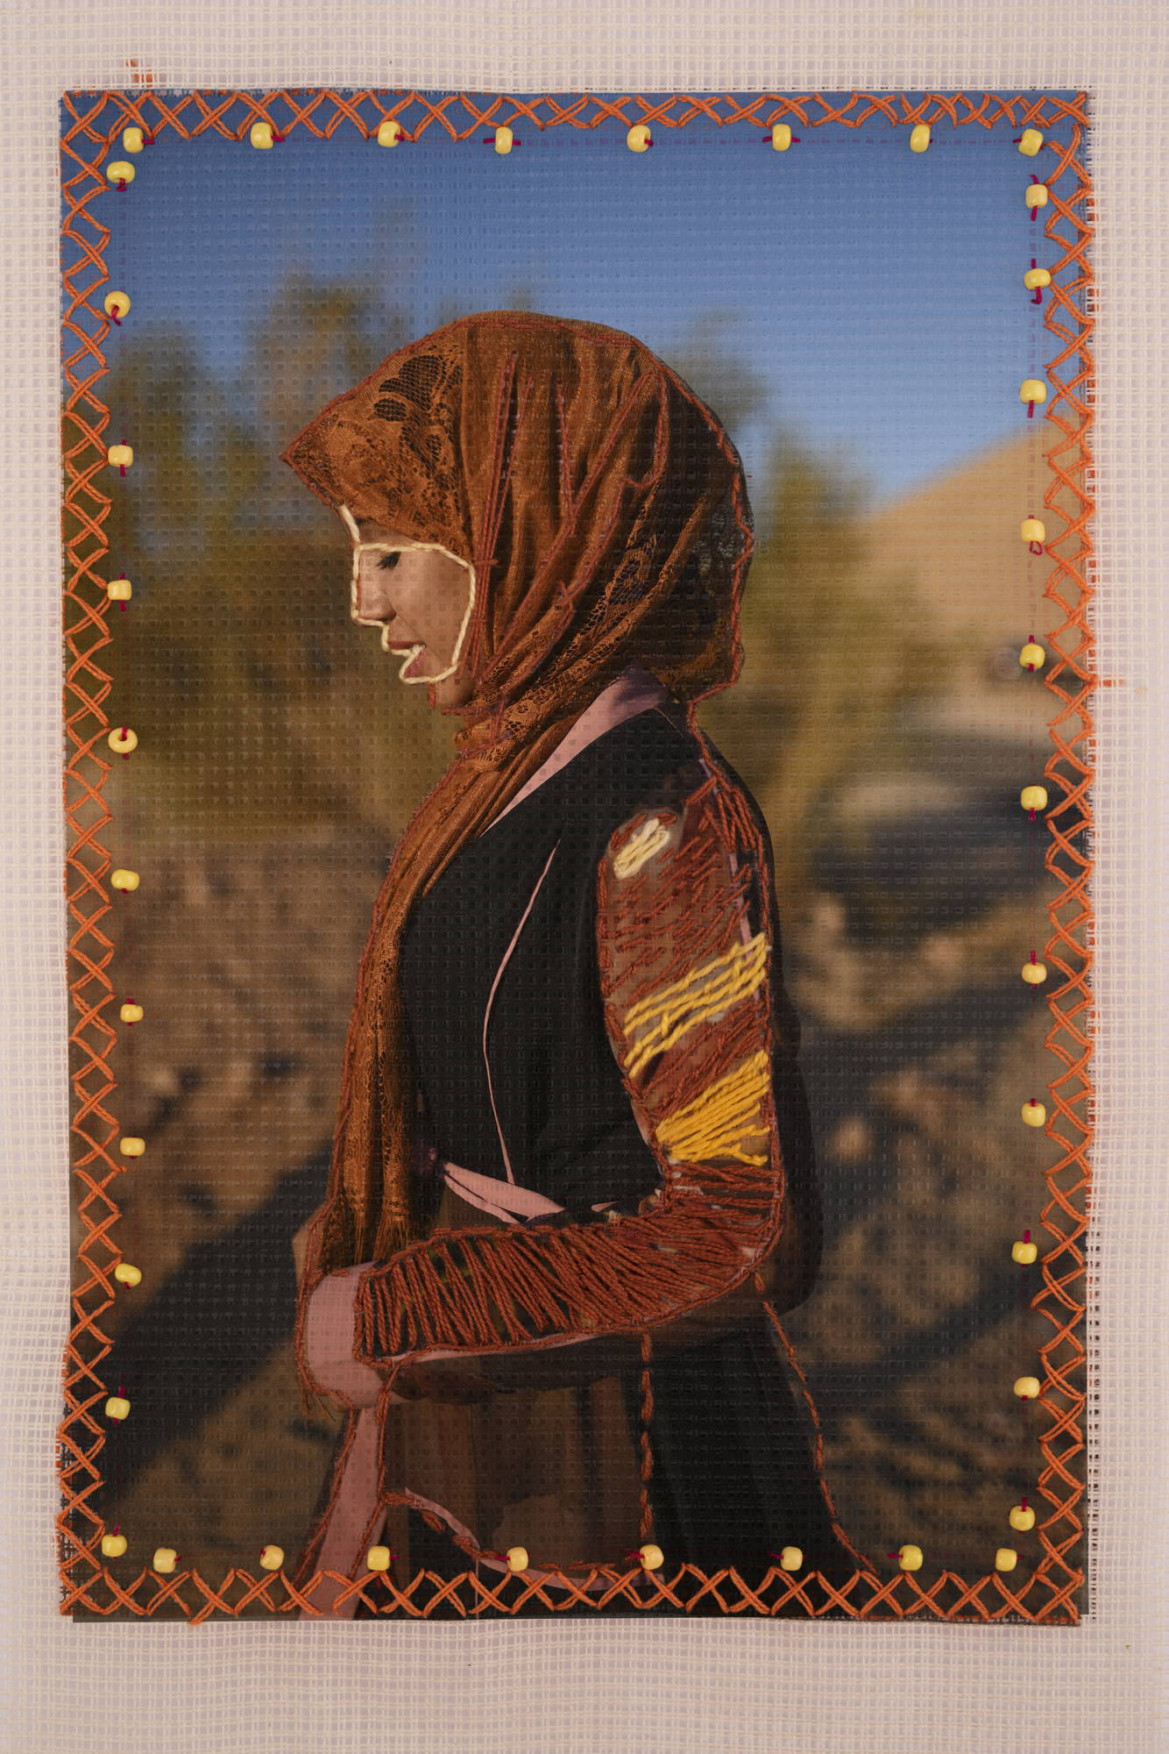 fot. Rehab Eldalil, z cyklu "The Longing of the Stranger Whose Path Has Been Broken"

<br><br>

Zdjęcie Nadii (20 lat), wyhaftowane przez nią i jej kuzynkę Mariam (19 lat), w Świętej Katarzynie na Południowym Synaju w Egipcie, 8 grudnia 2019 r.

<br><br>

Beduini zamieszkują półwysep Synaj od wieków i od dawna spotykają się z dyskryminacją. Nadal uważa się, że byli kolaborantami podczas izraelskiej okupacji Synaju w latach 1967-1982, kiedy to pozostali, by chronić swoją ziemię. Kobiety beduińskie są także źle przedstawiane i stereotypowo traktowane w egipskich mediach. W ramach projektu, który podważa te stereotypy, portrety kobiet z tej społeczności, wydrukowane na tkaninie, zostały wyhaftowane przez nie same, a mężczyźni z tej społeczności dodali odręcznie napisane wiersze. Fotografka jest aktywistką i od 15 lat aktywnie działa na rzecz tej społeczności. 
